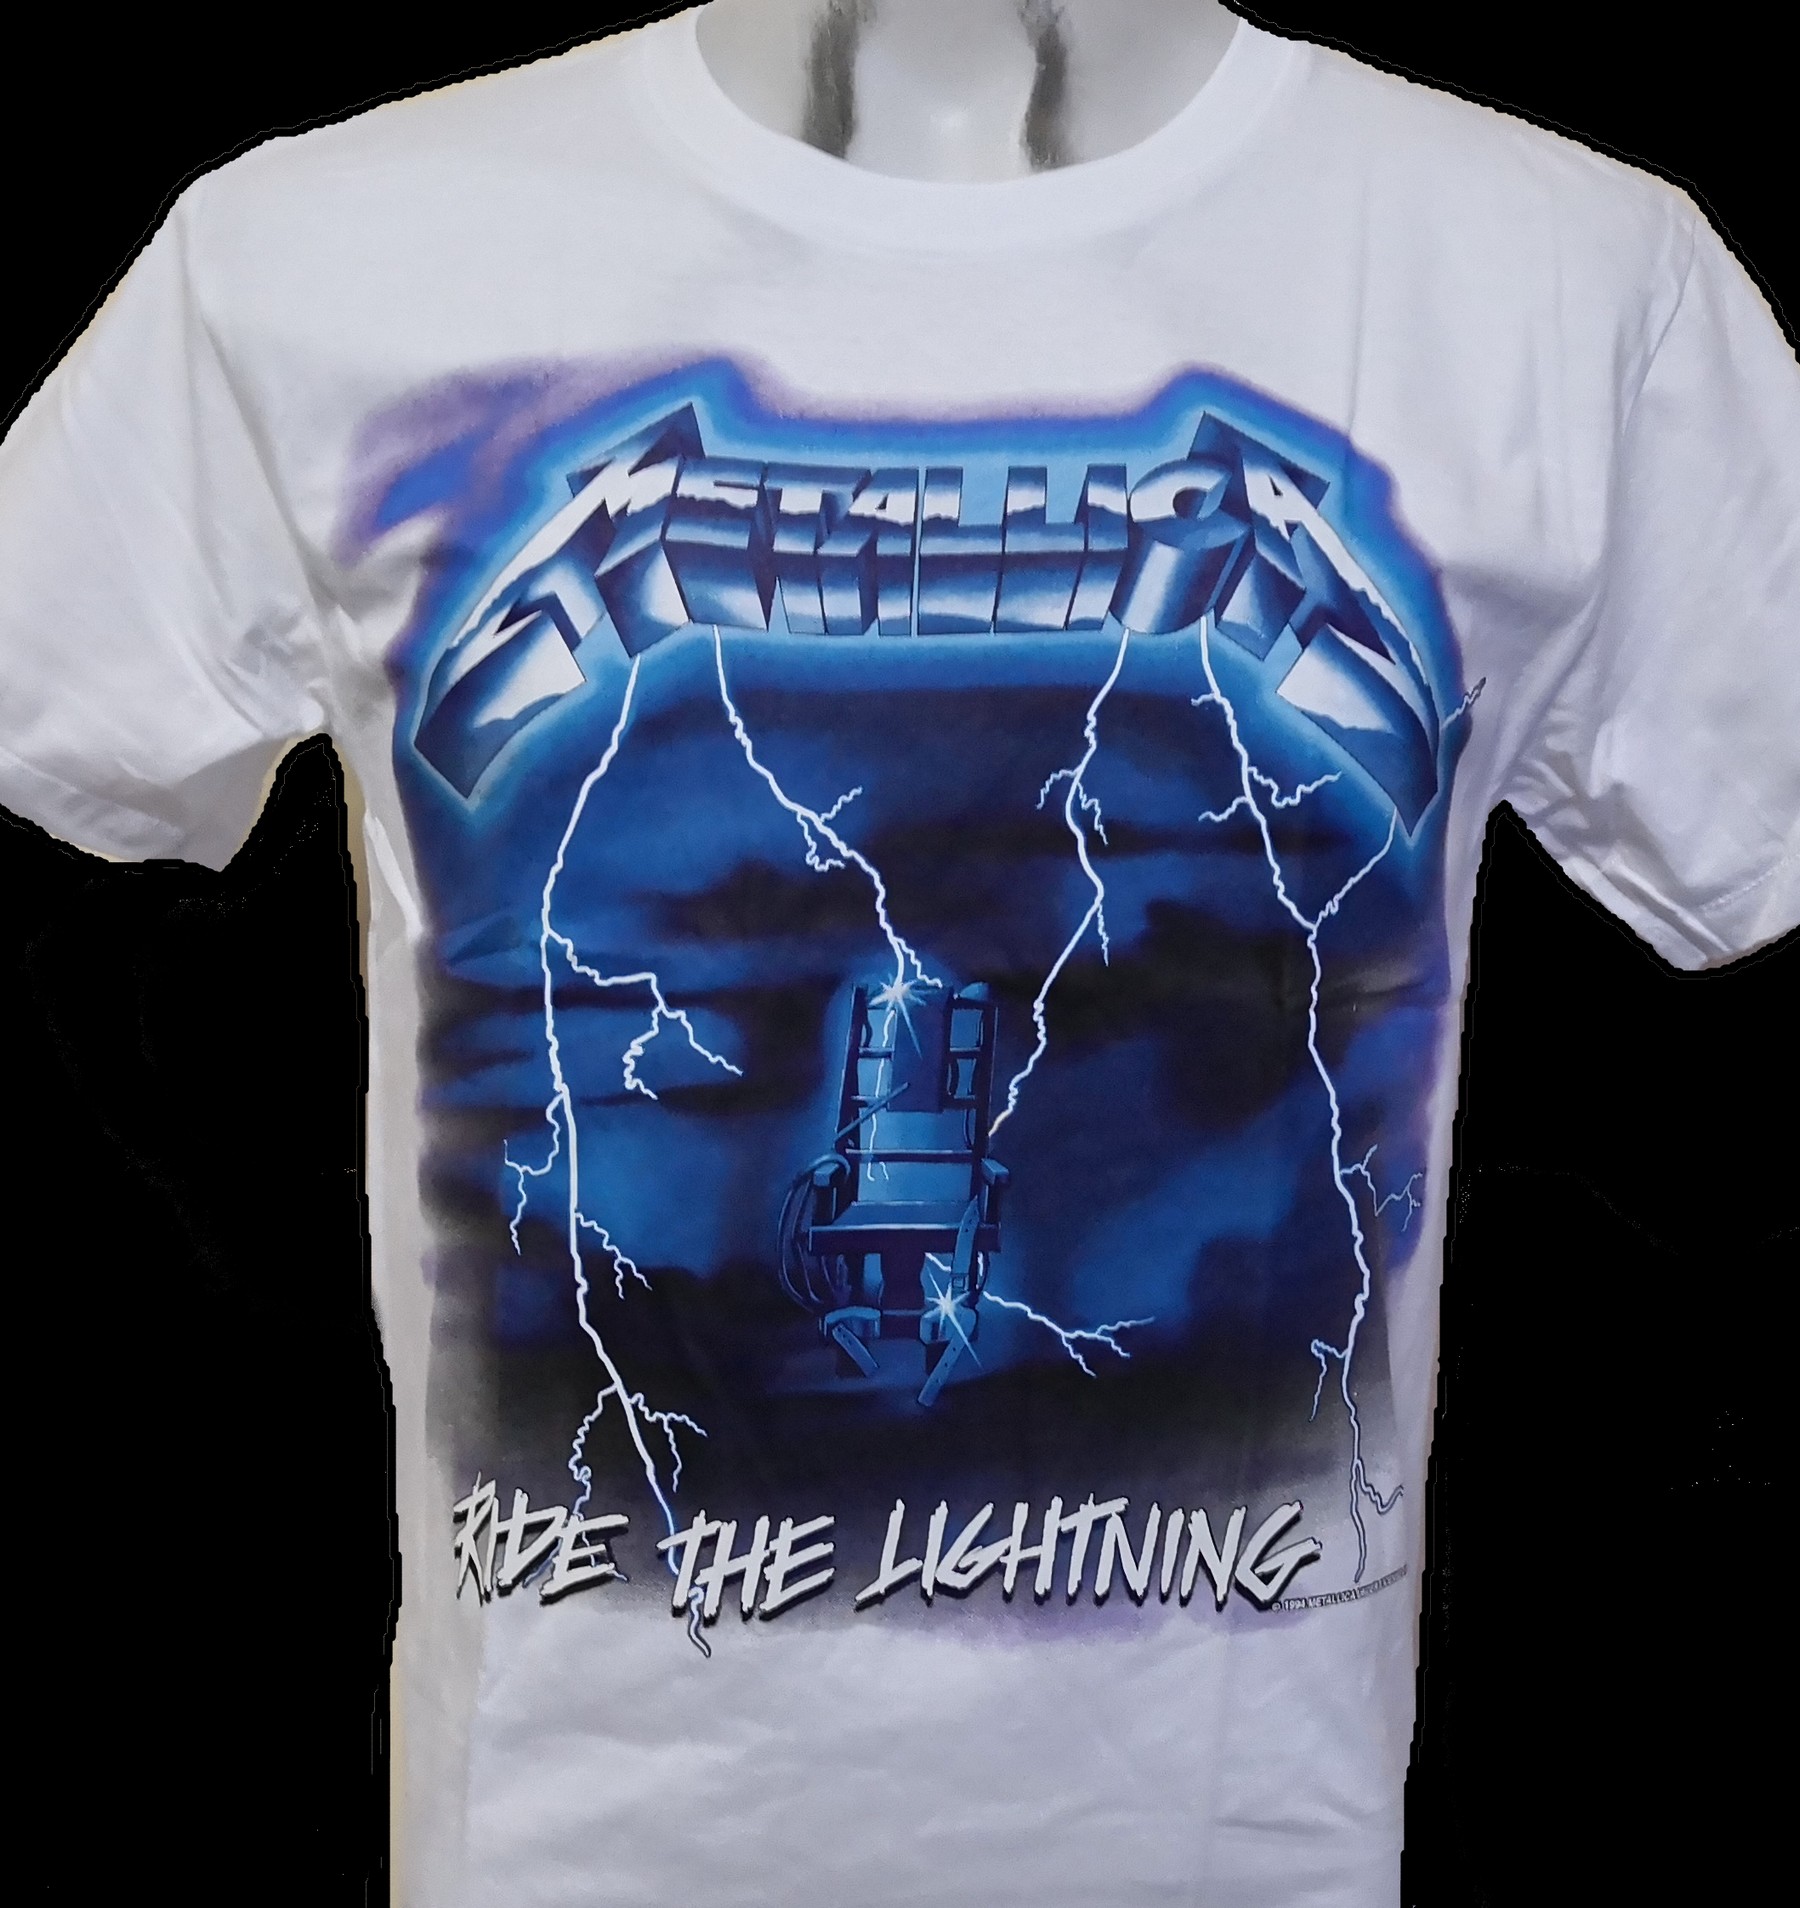 Buy > blue metallica t shirt > in stock